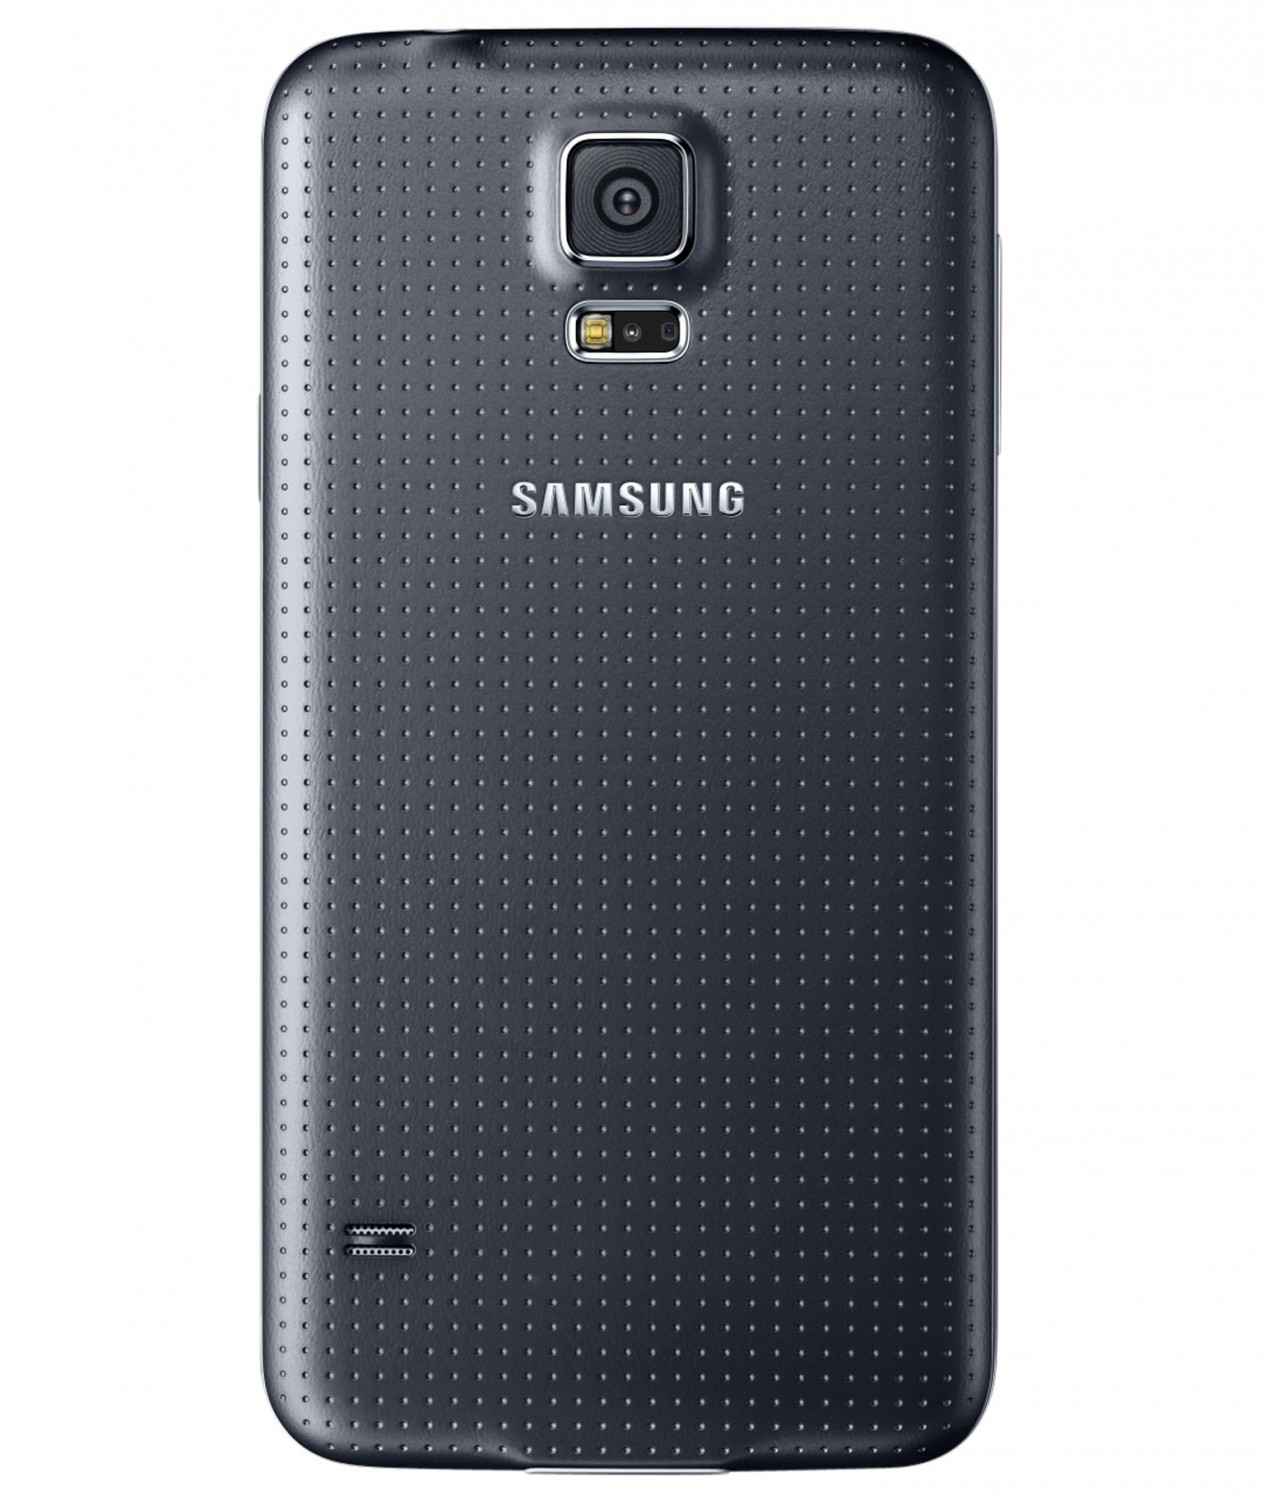 Smartphones Samsung Galaxy S5 im Test, Bild 2